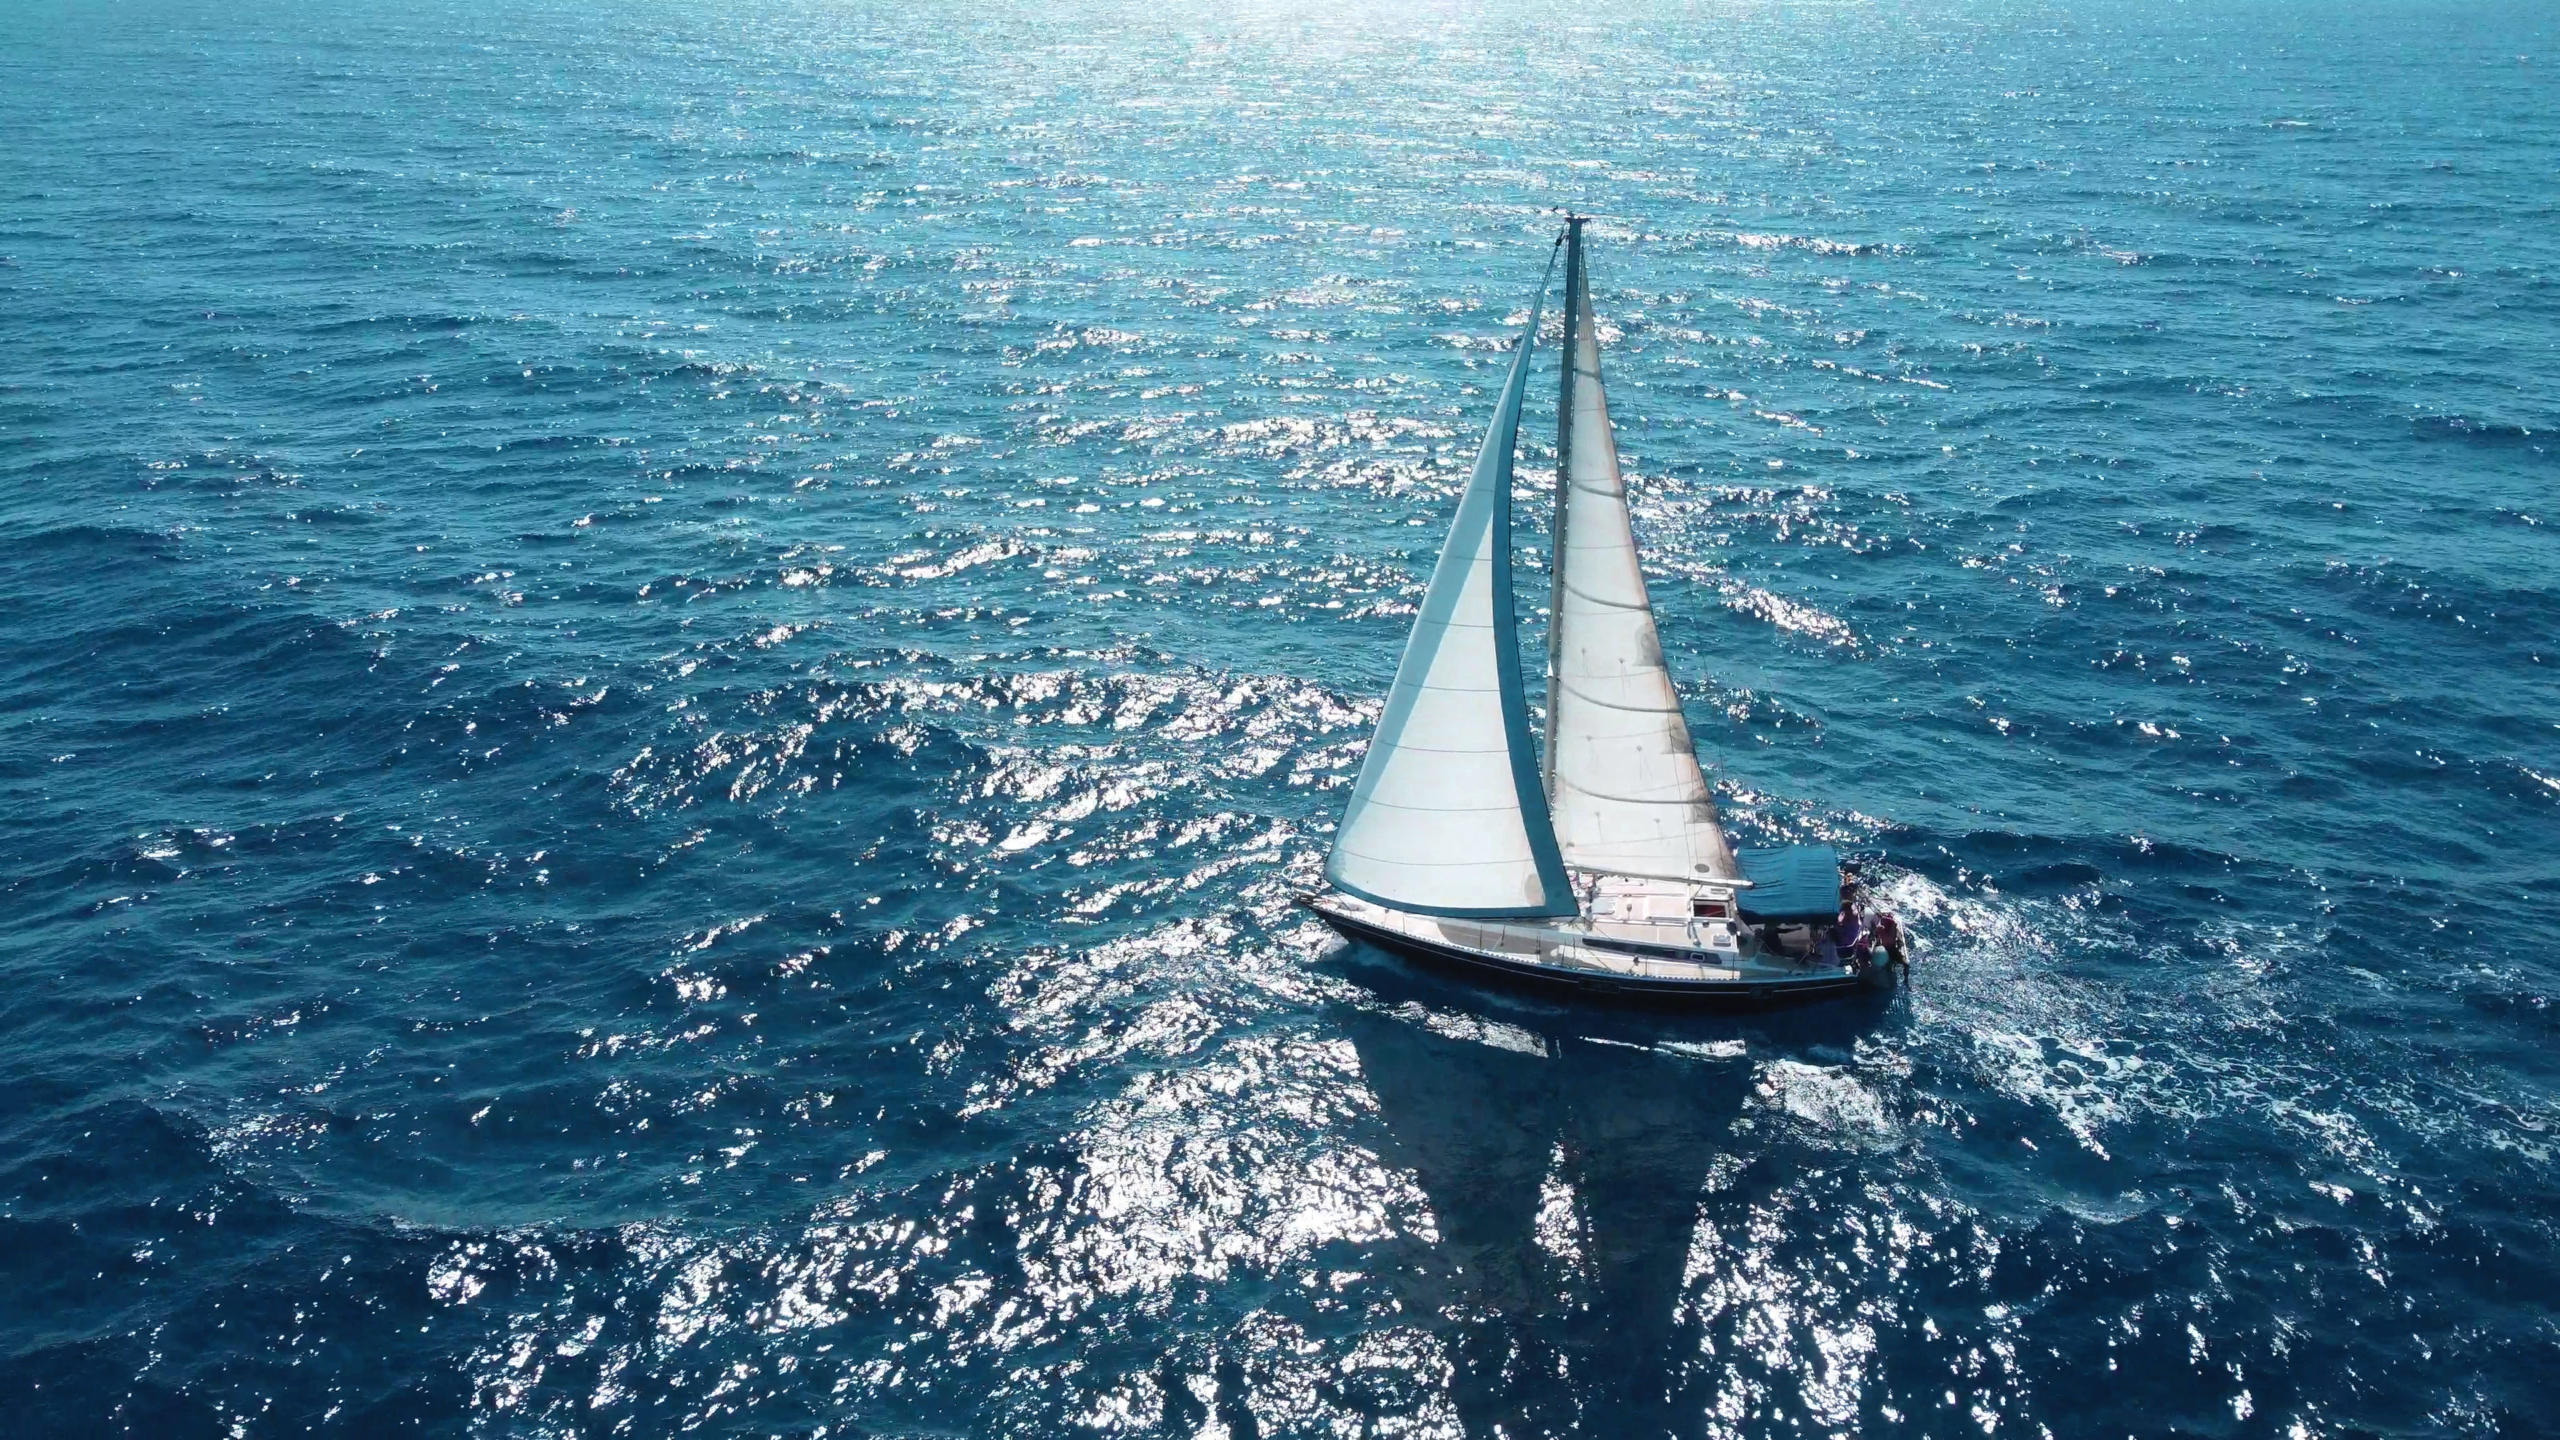 Chloe-sail-boat-agean-sea-escaleyachting